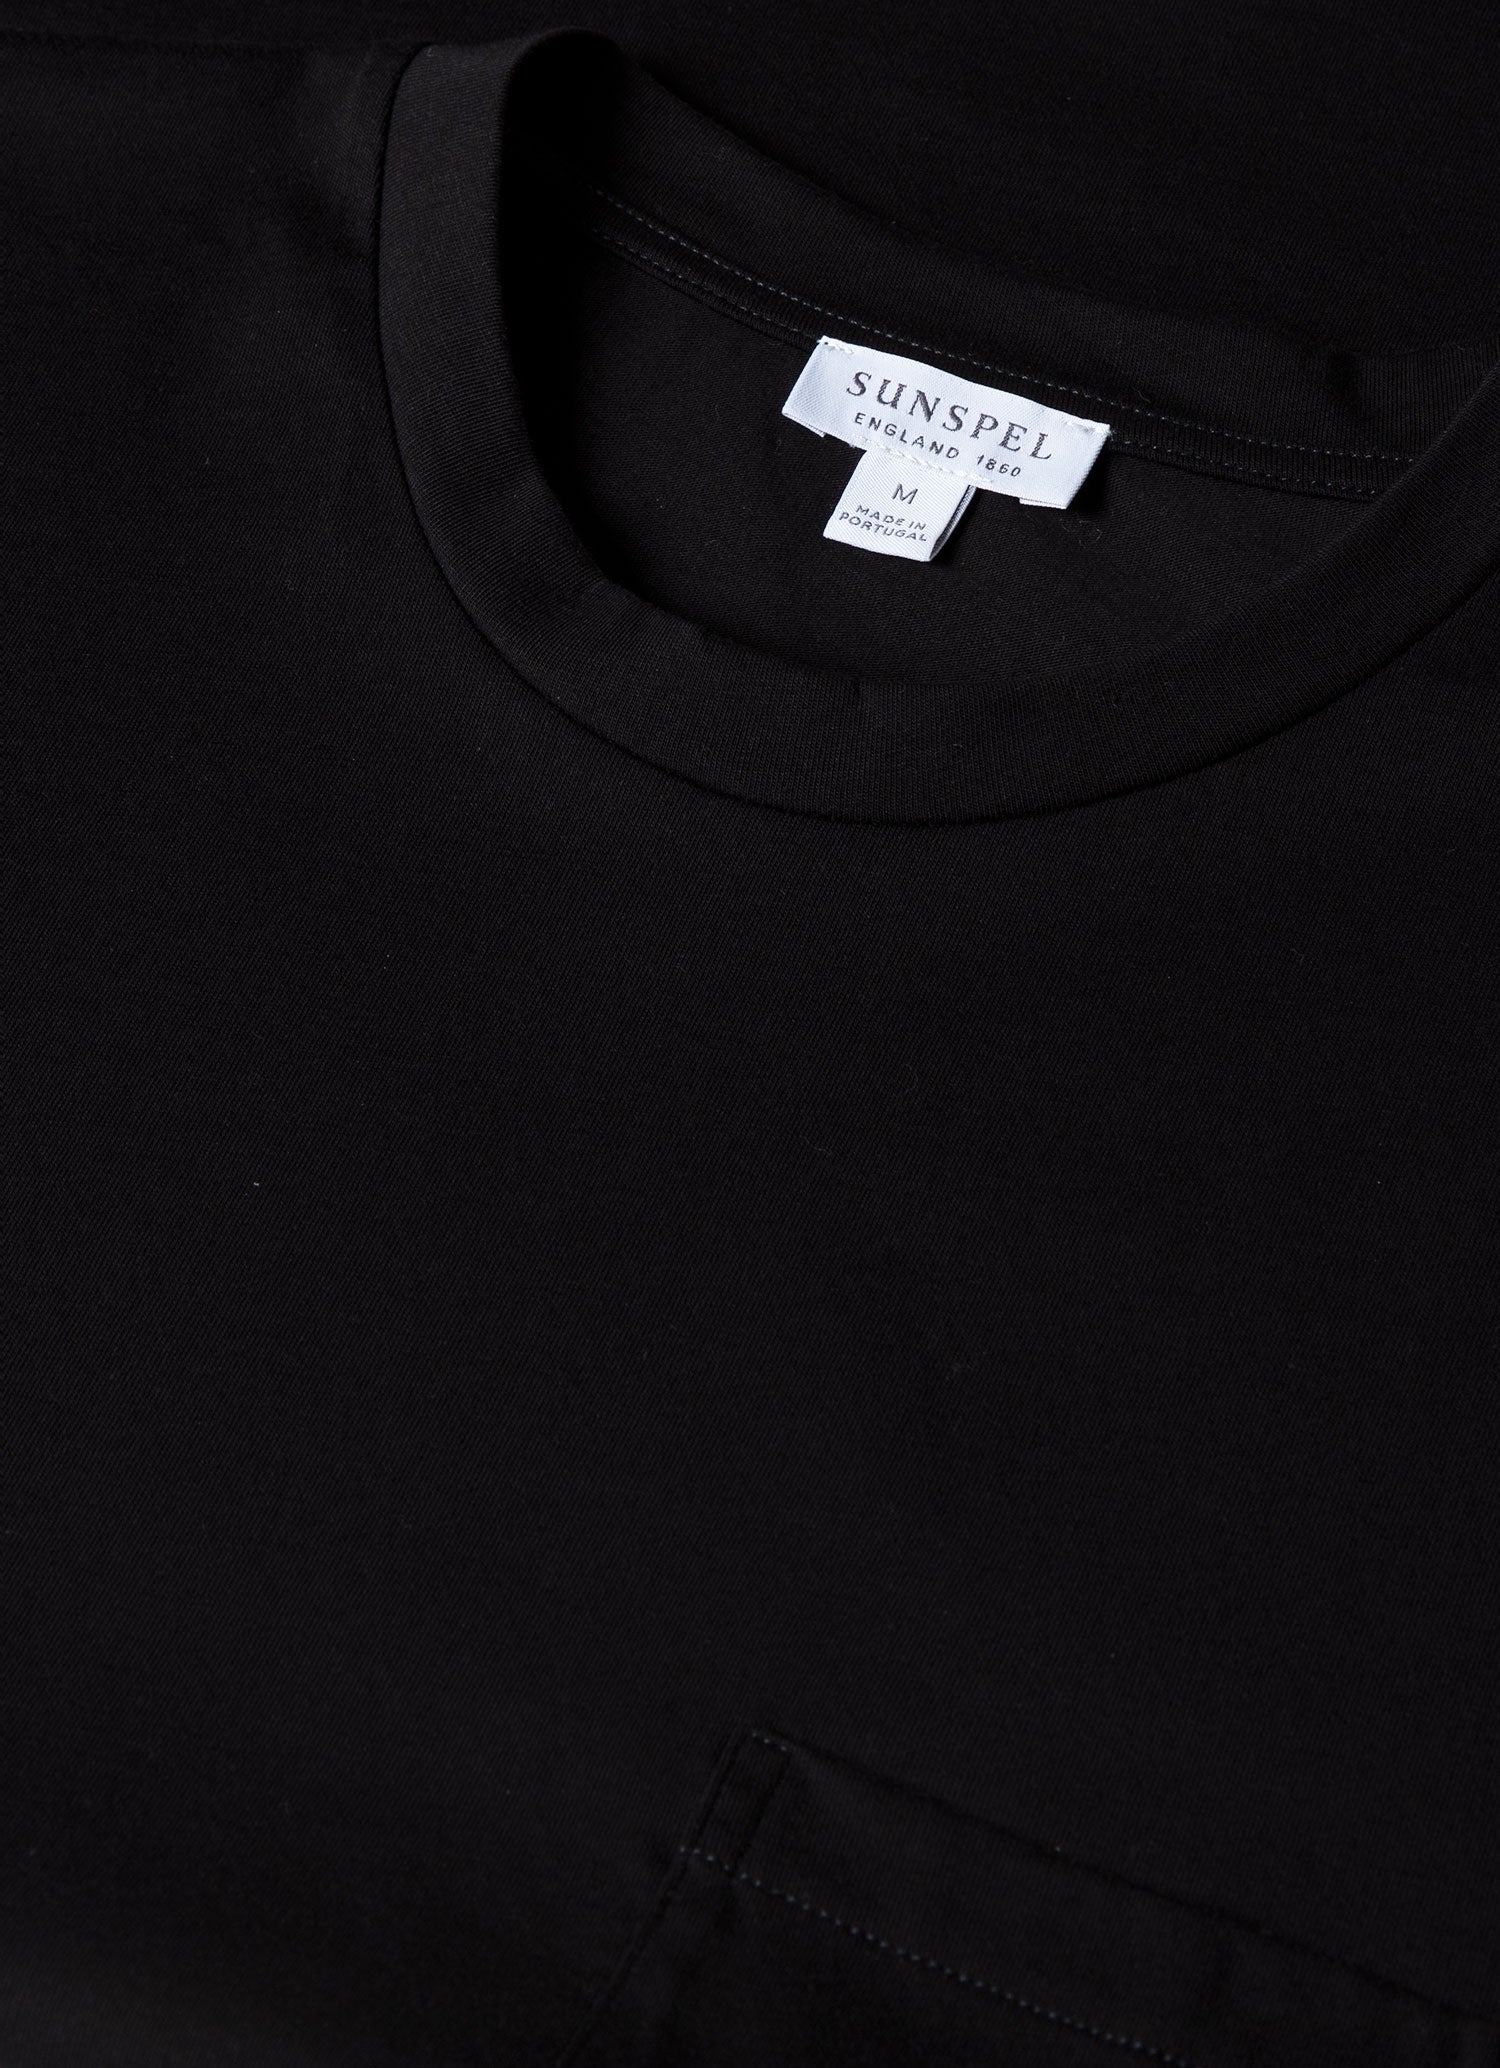 Men's Riviera Pocket T-shirt in Black